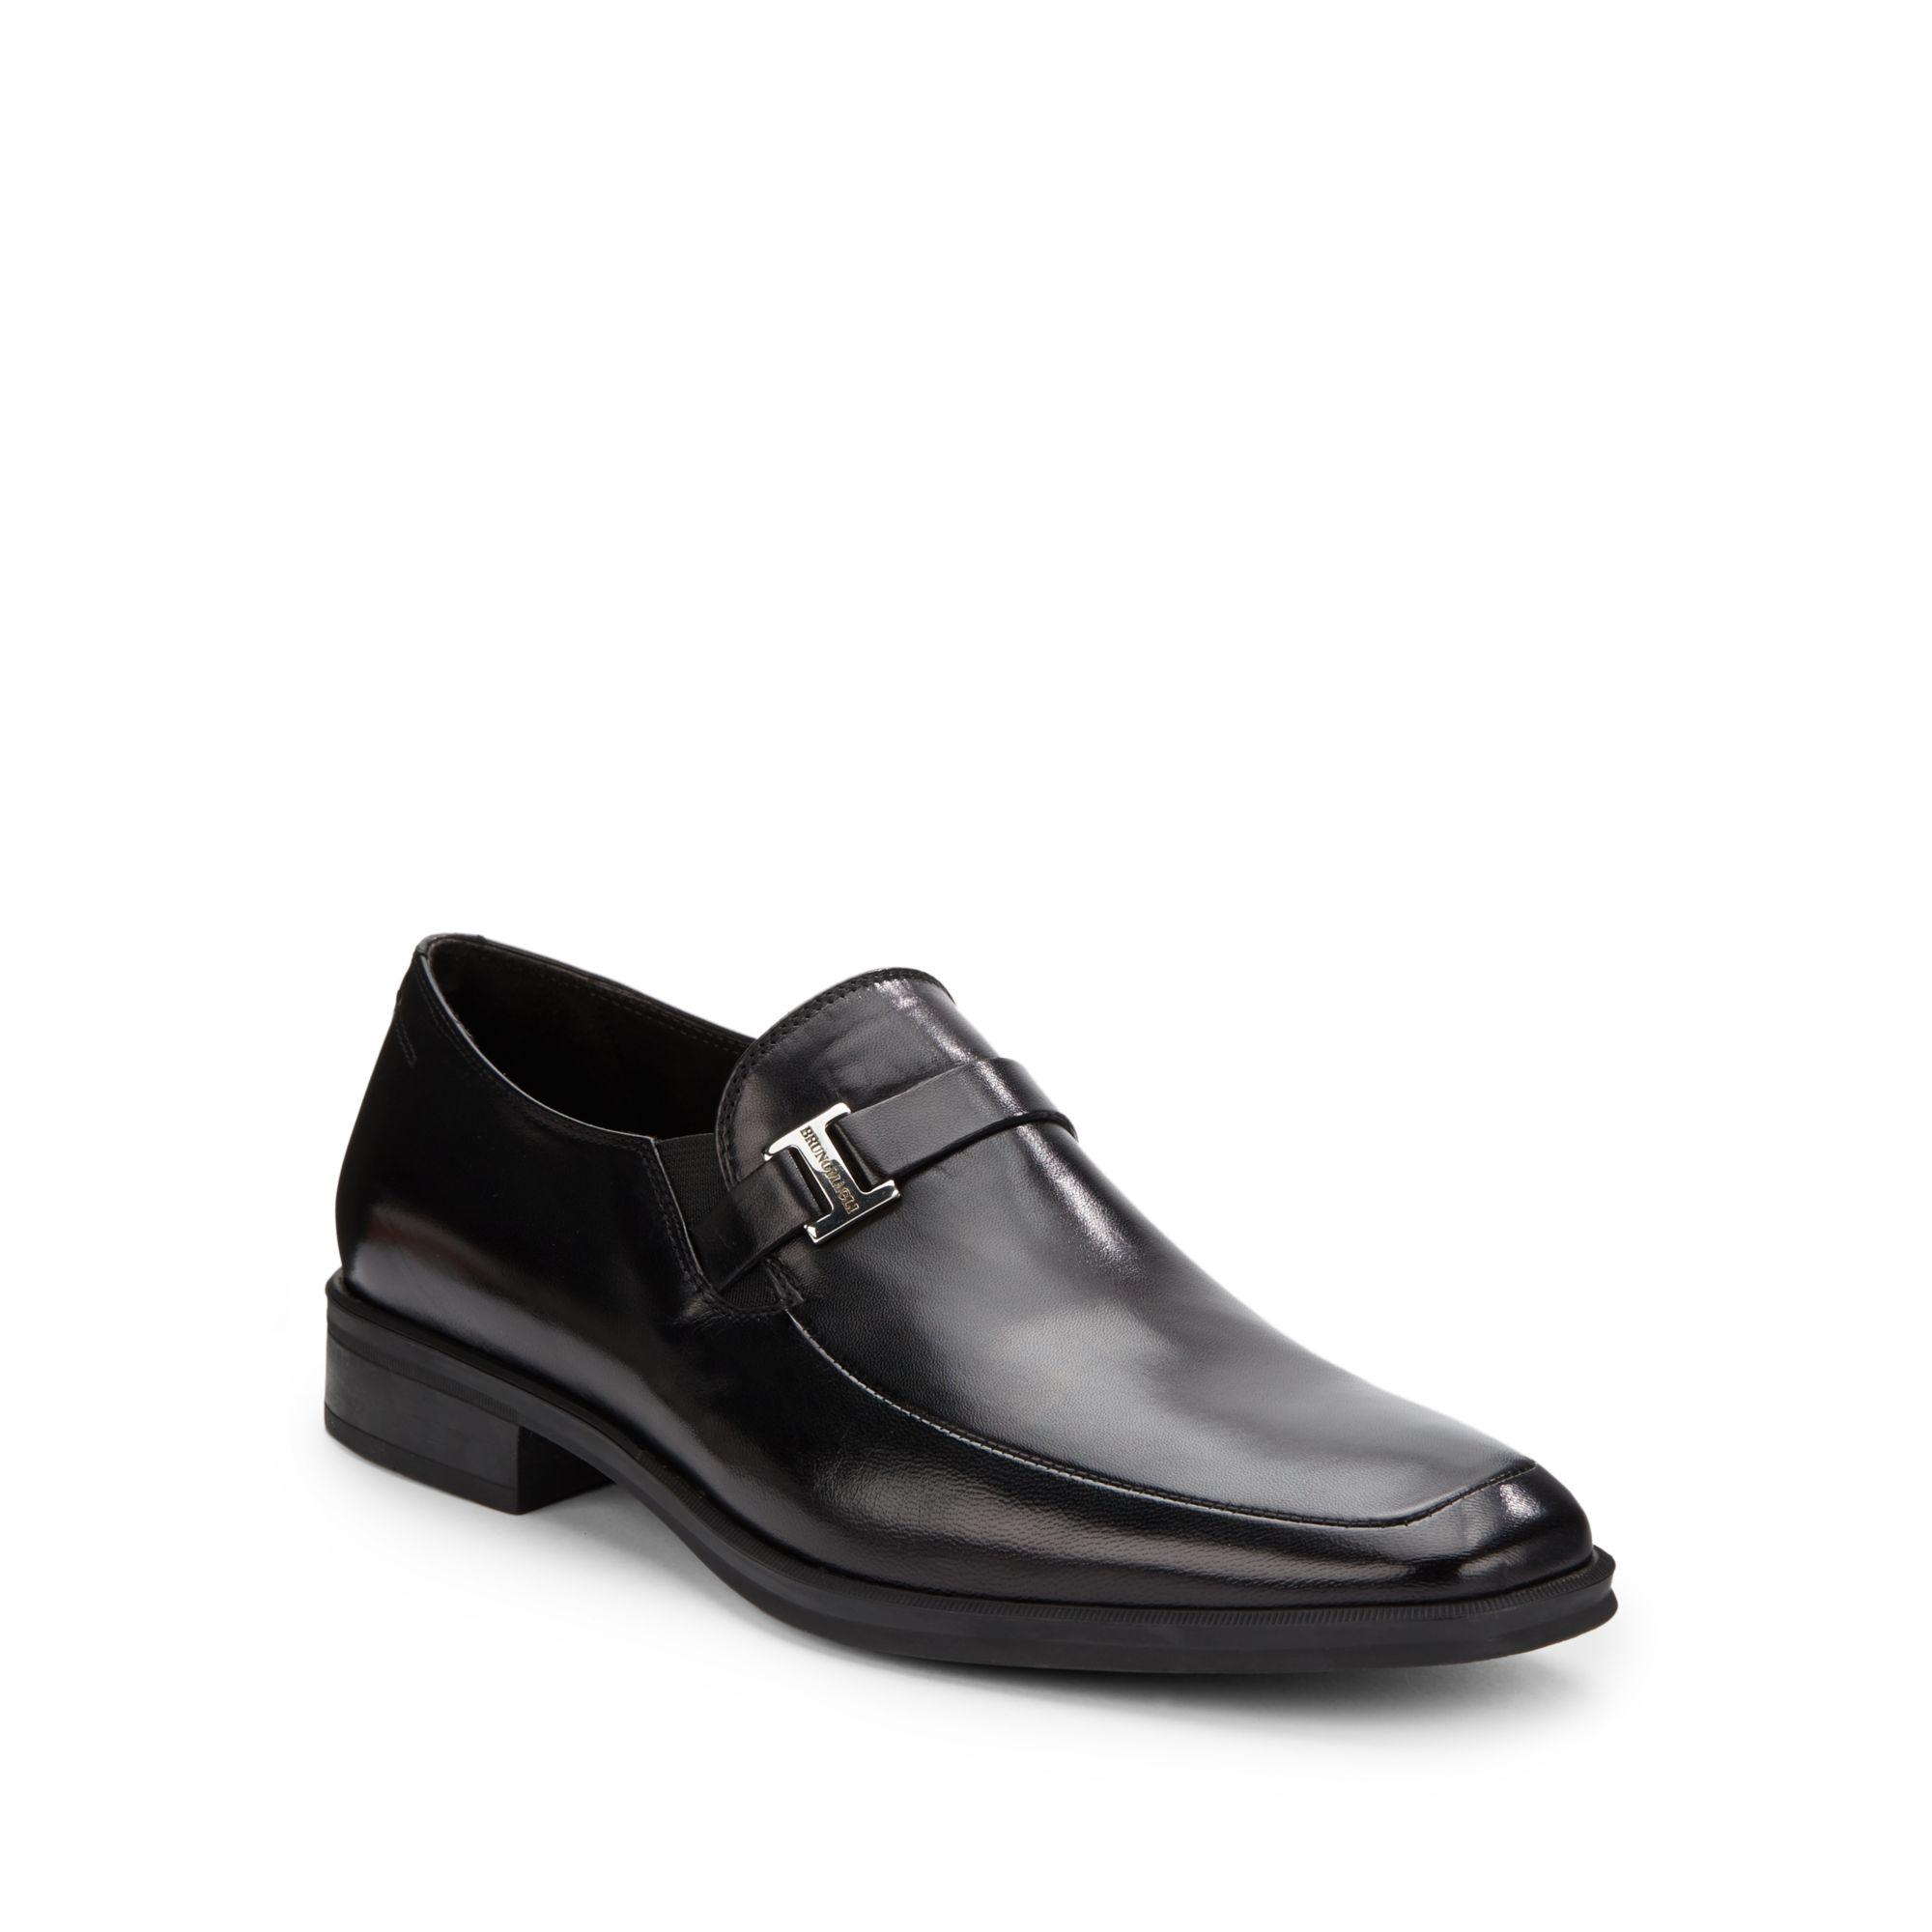 Bruno Magli Pivetto Leather Square-toe Loafers in Black for Men - Lyst